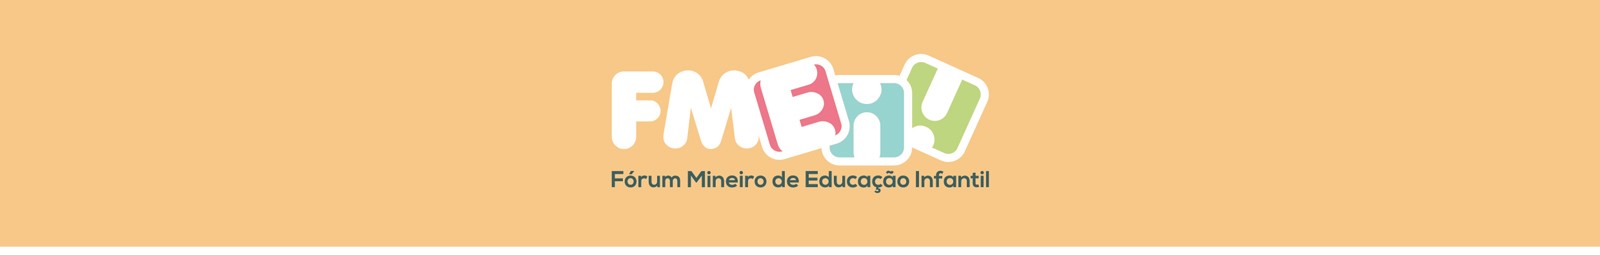 Fórum Mineiro de Educação Infantil - FMEI